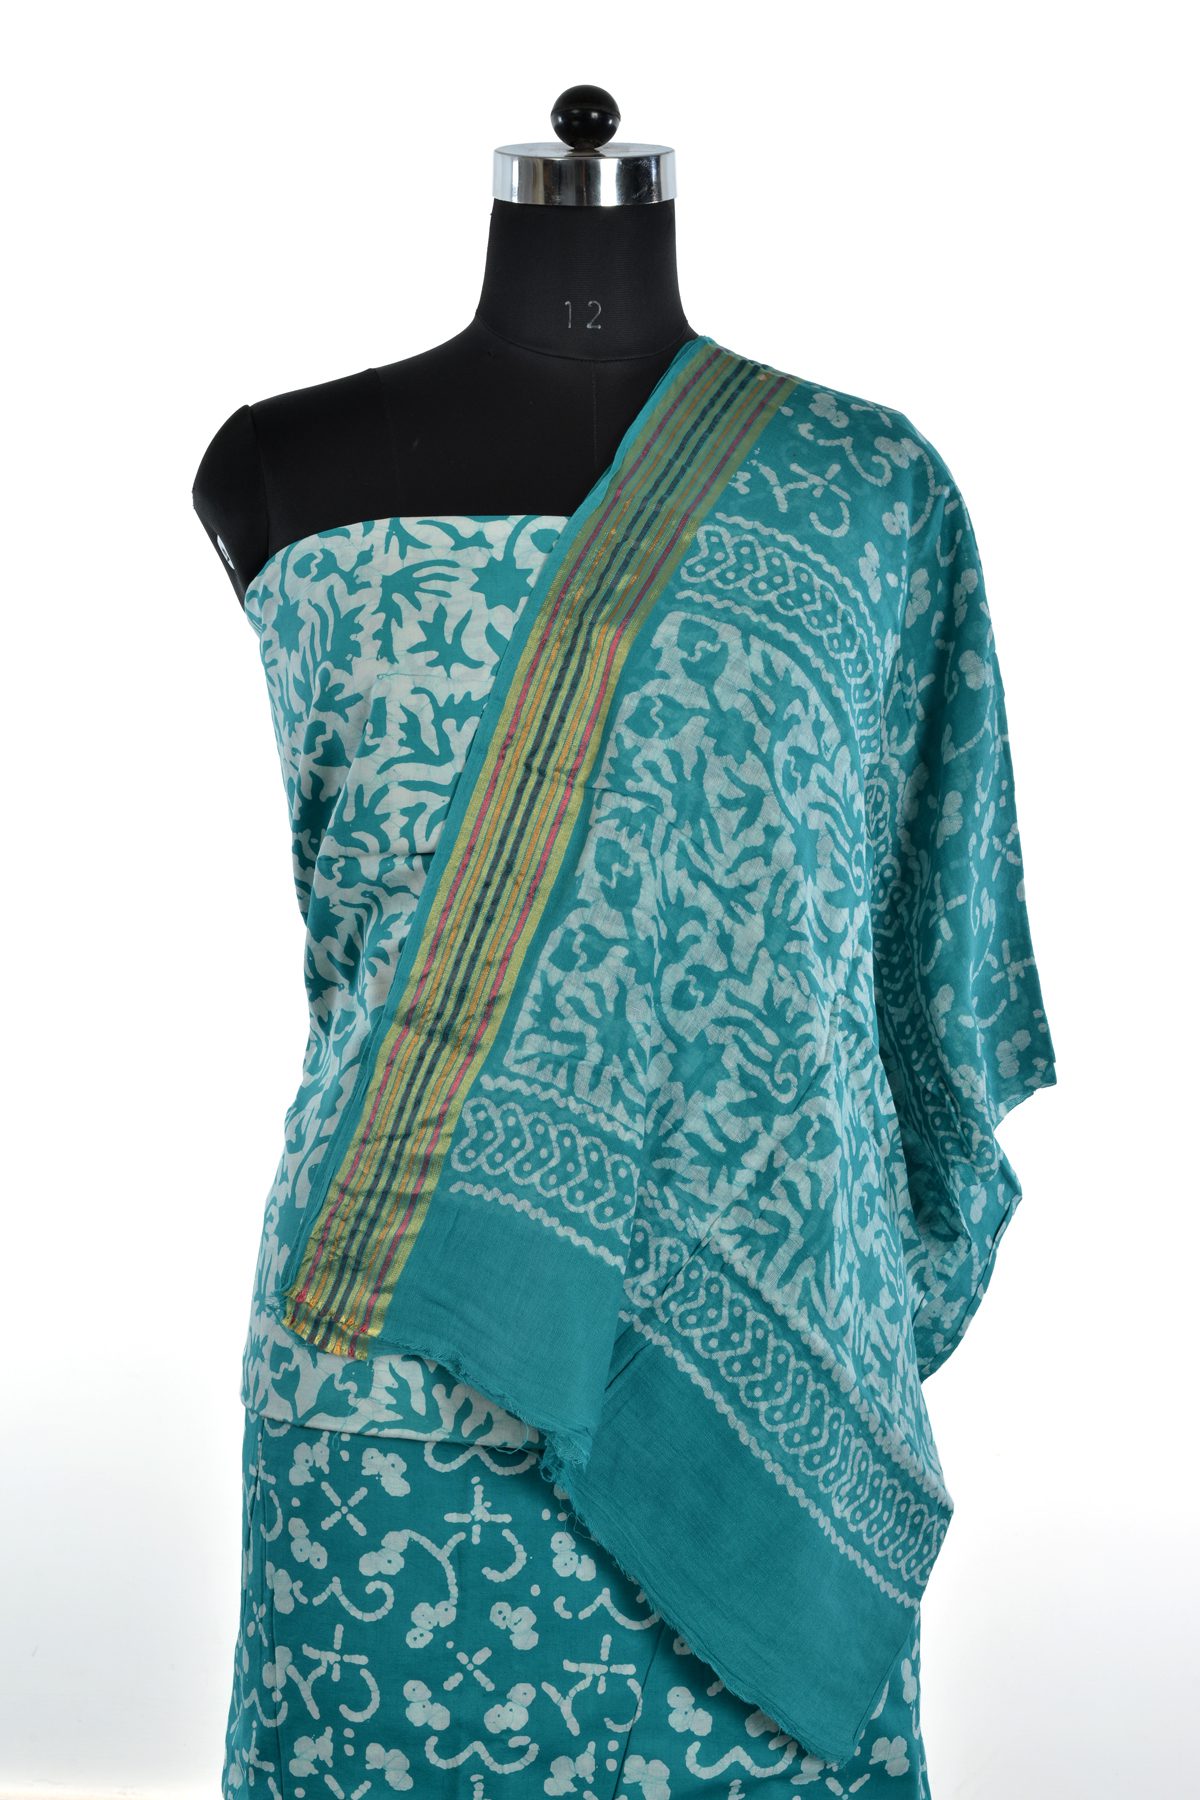 batik print cotton dress material by Blockart - Issuu